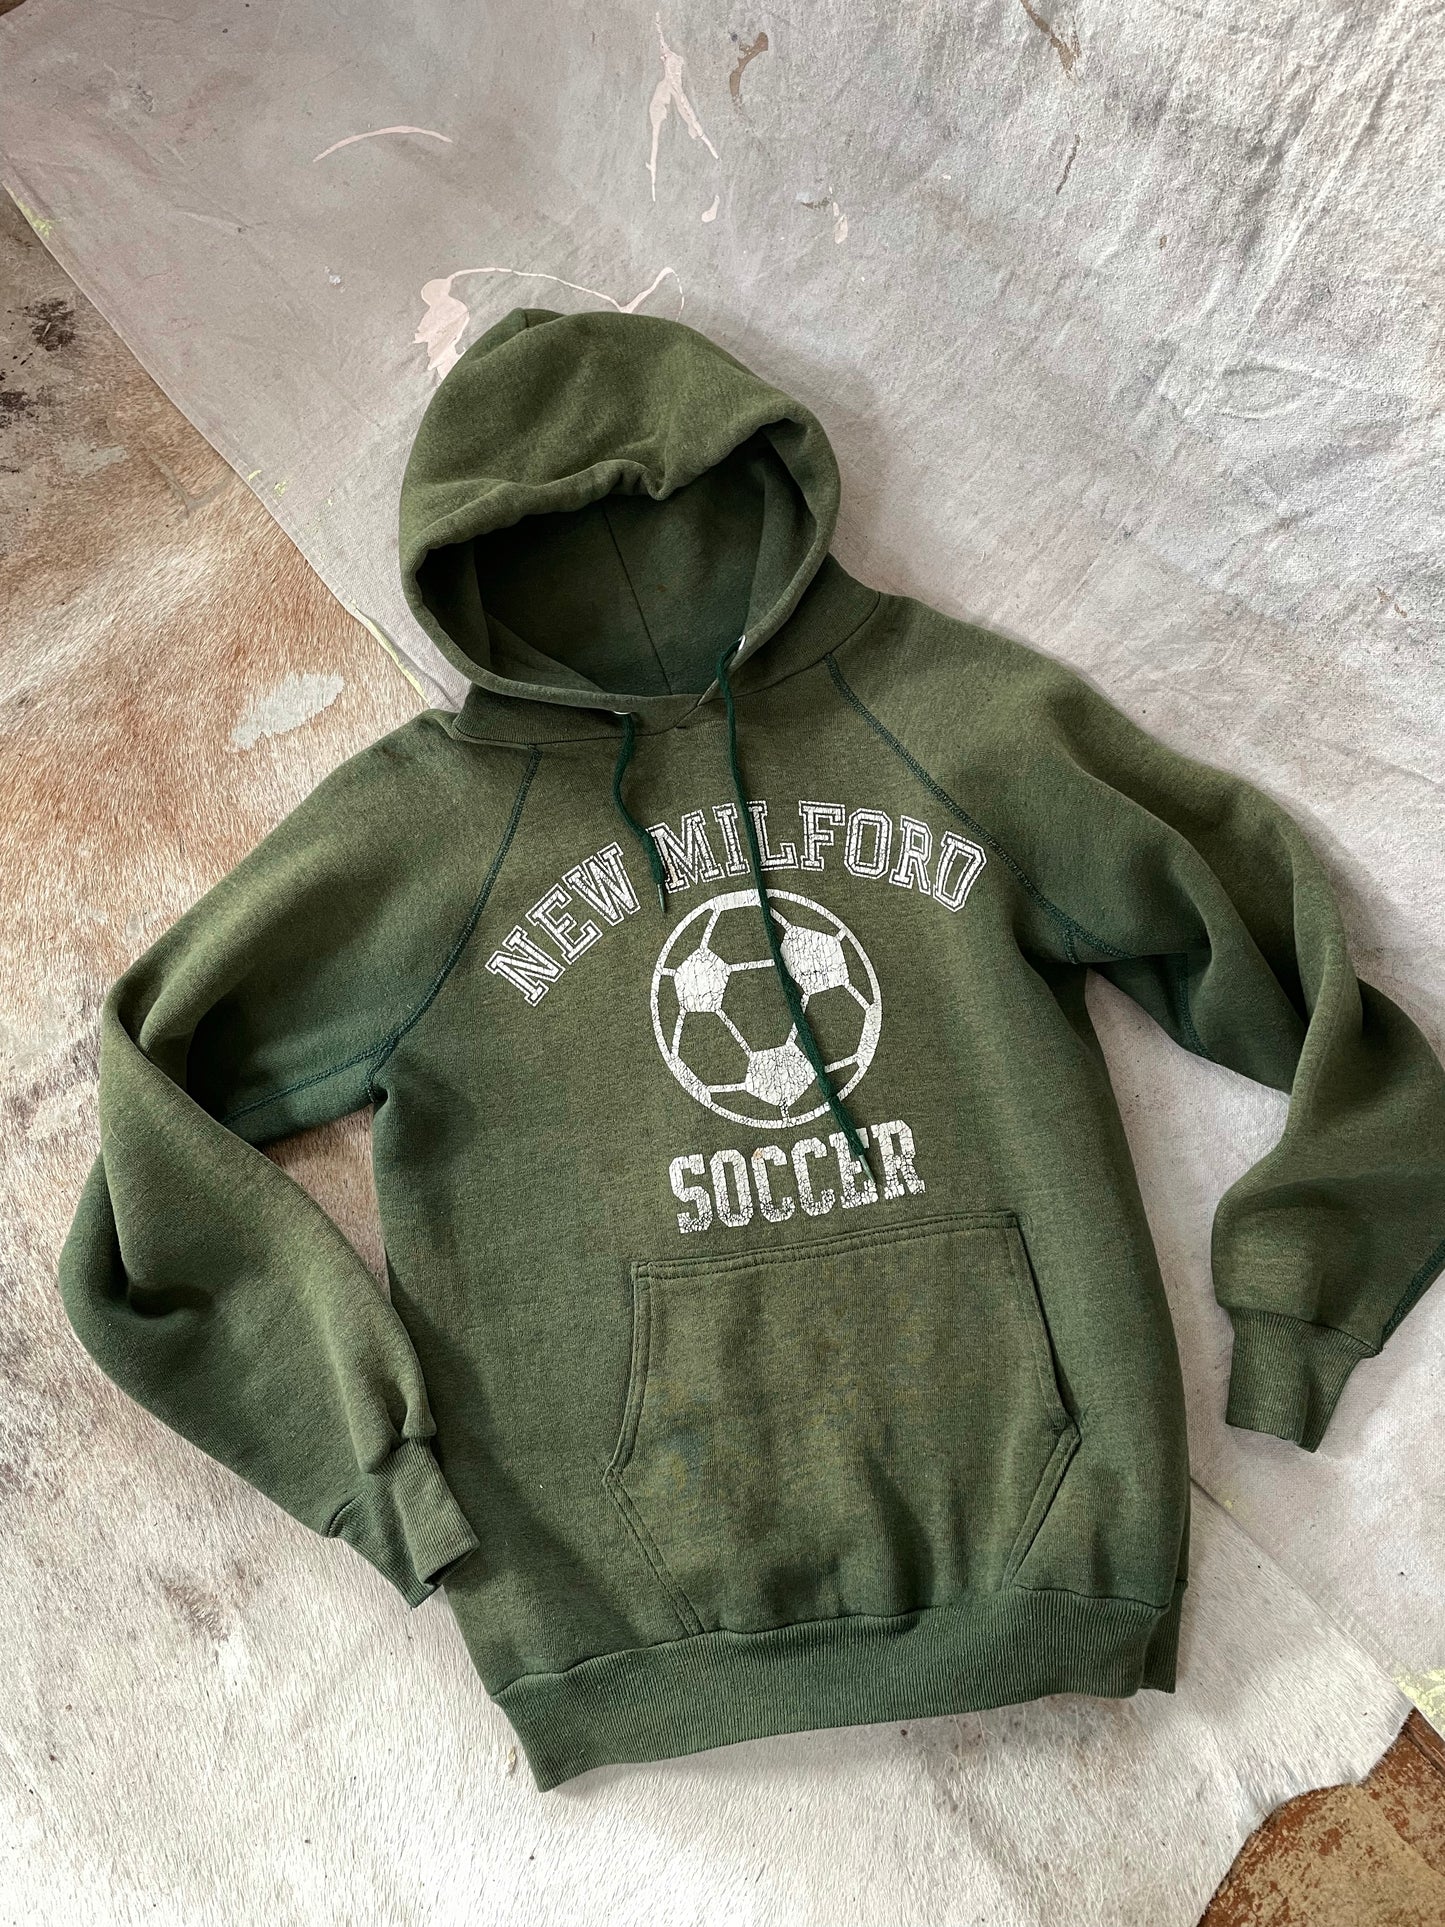 New Medford Soccer Hoodie